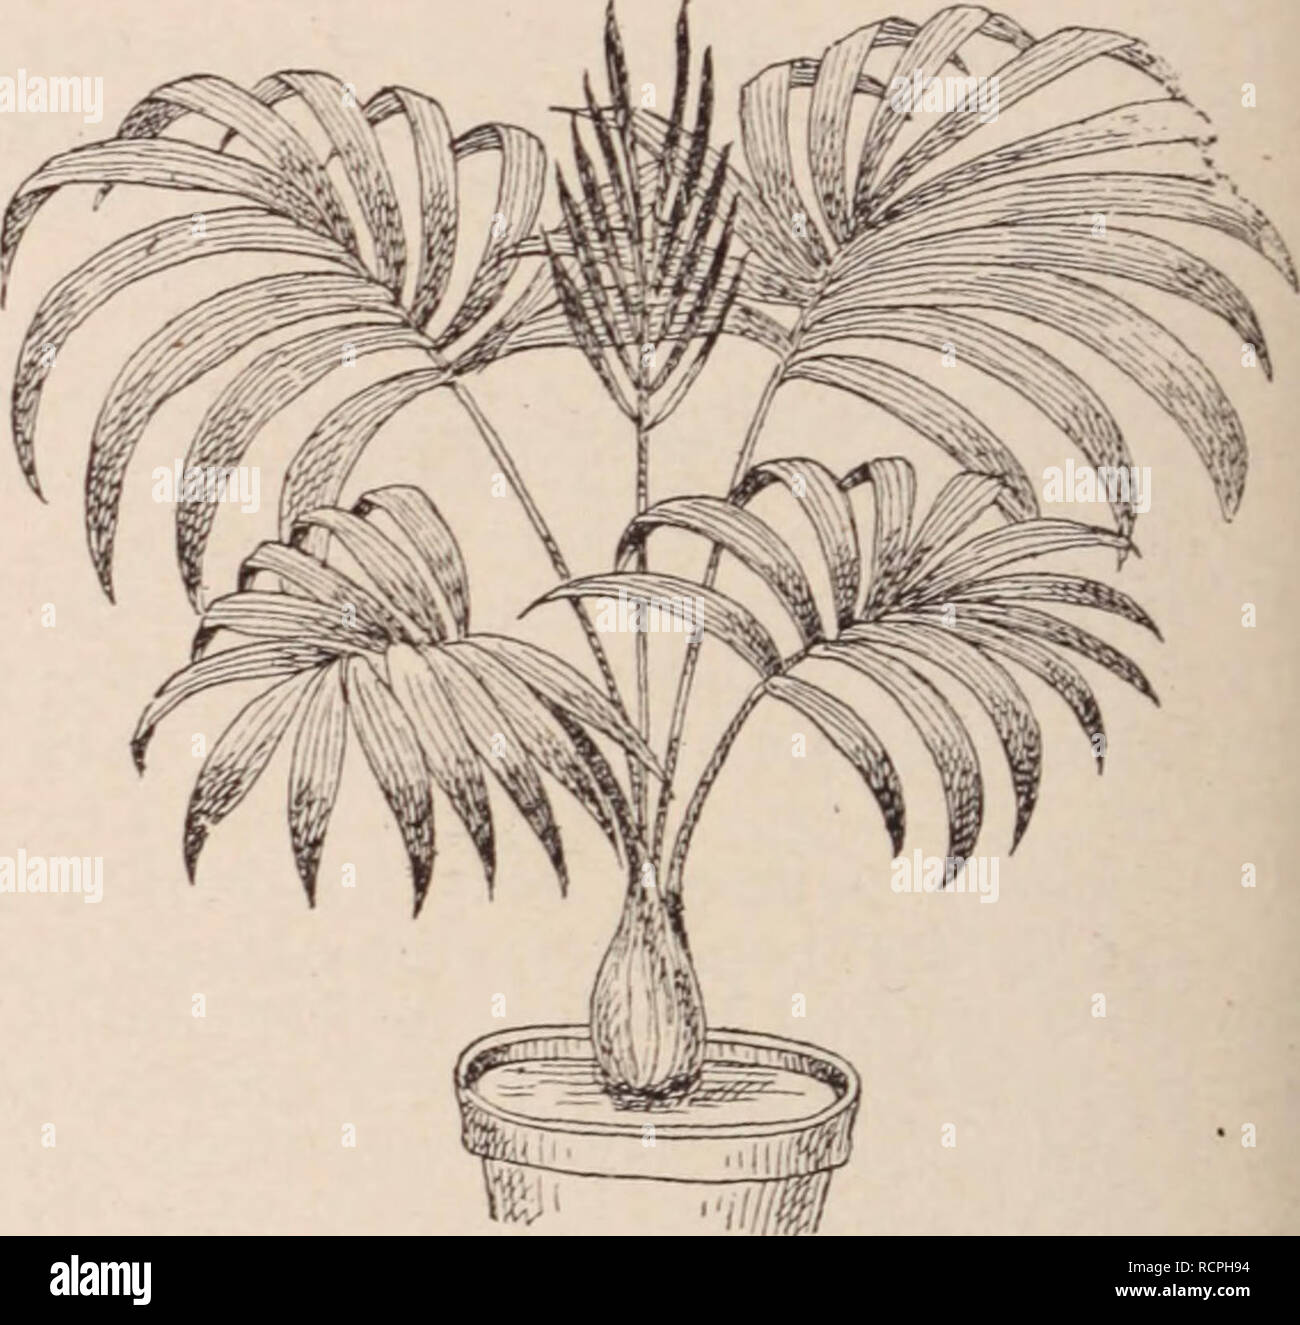 . Dictionnaire d'horticulture illustrÃ© / par D. Bois  prÃ©face de Maxime Cornu  avec la collaboration de E. AndrÃ© ... [et al.].. Horticulture; Dictionaries.. Fig. 481. â HOVEA ELLIPTICA D C. On pourrait encore cultiver: H lanigera Lodd. [Syn.: H. pannosa Cunn., B. 31. 3053]; H. longifolia R. Br., Bot. Reg. 614 ; H. Manglesii Lindl, Bot. Reo. t. 62: H. purpurea Sweet. Austr. 13; B. Reg. 1423 ; Lodd. B. Cab. 1457. Serre froide bien aÃ©rÃ©e; terre de bruyÃ¨re. Graines ou boutures au printemps. J. D. HOVENIA Thunb. (RhamnÃ©es) Arbres de moyenne taille, Ã files, alternes, presque disti- ques, pÃ© Stock Photo